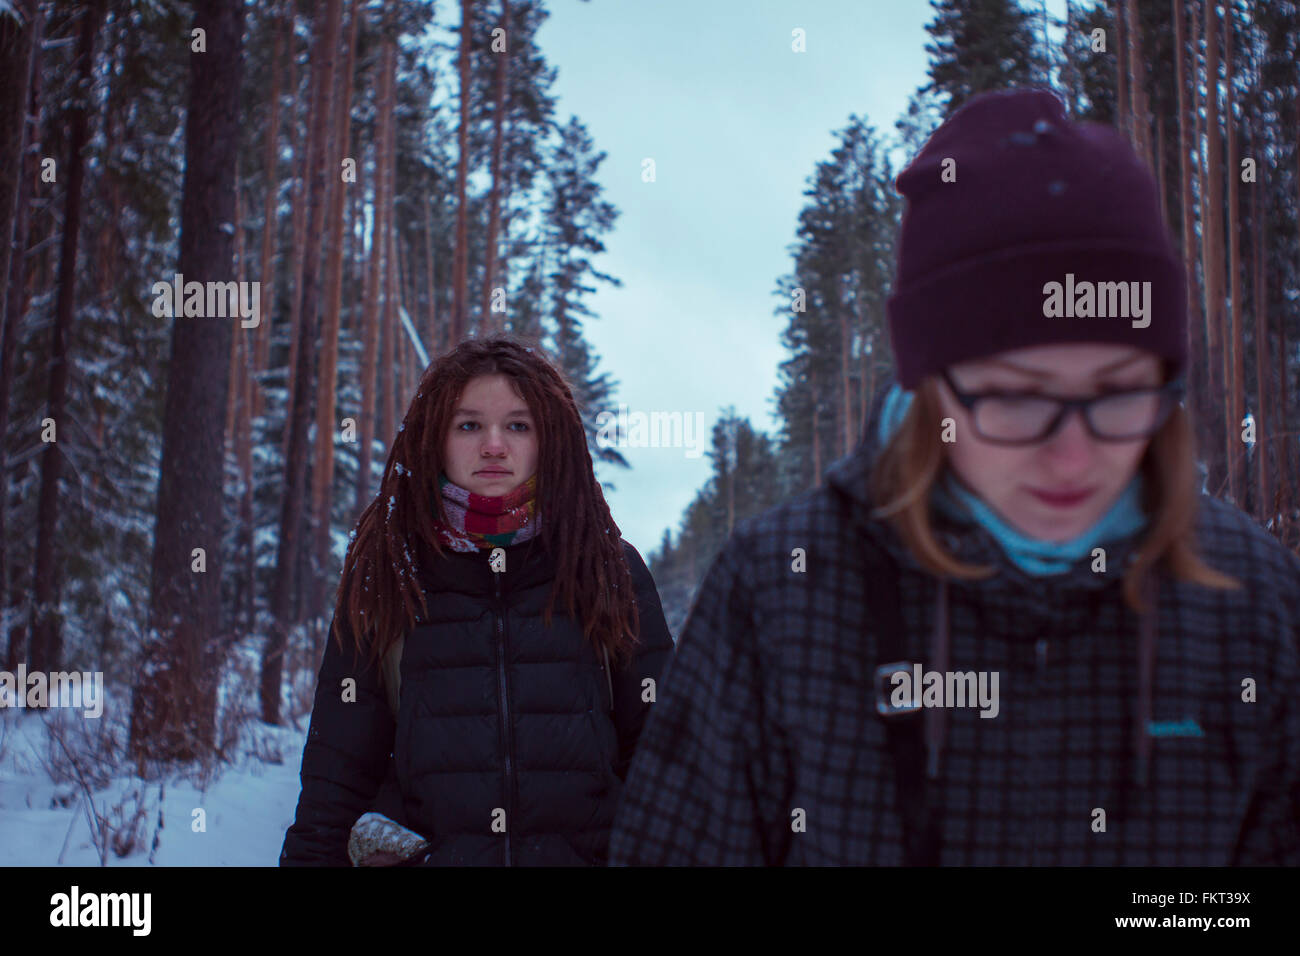 Caucasian women walking in snowy forest Stock Photo